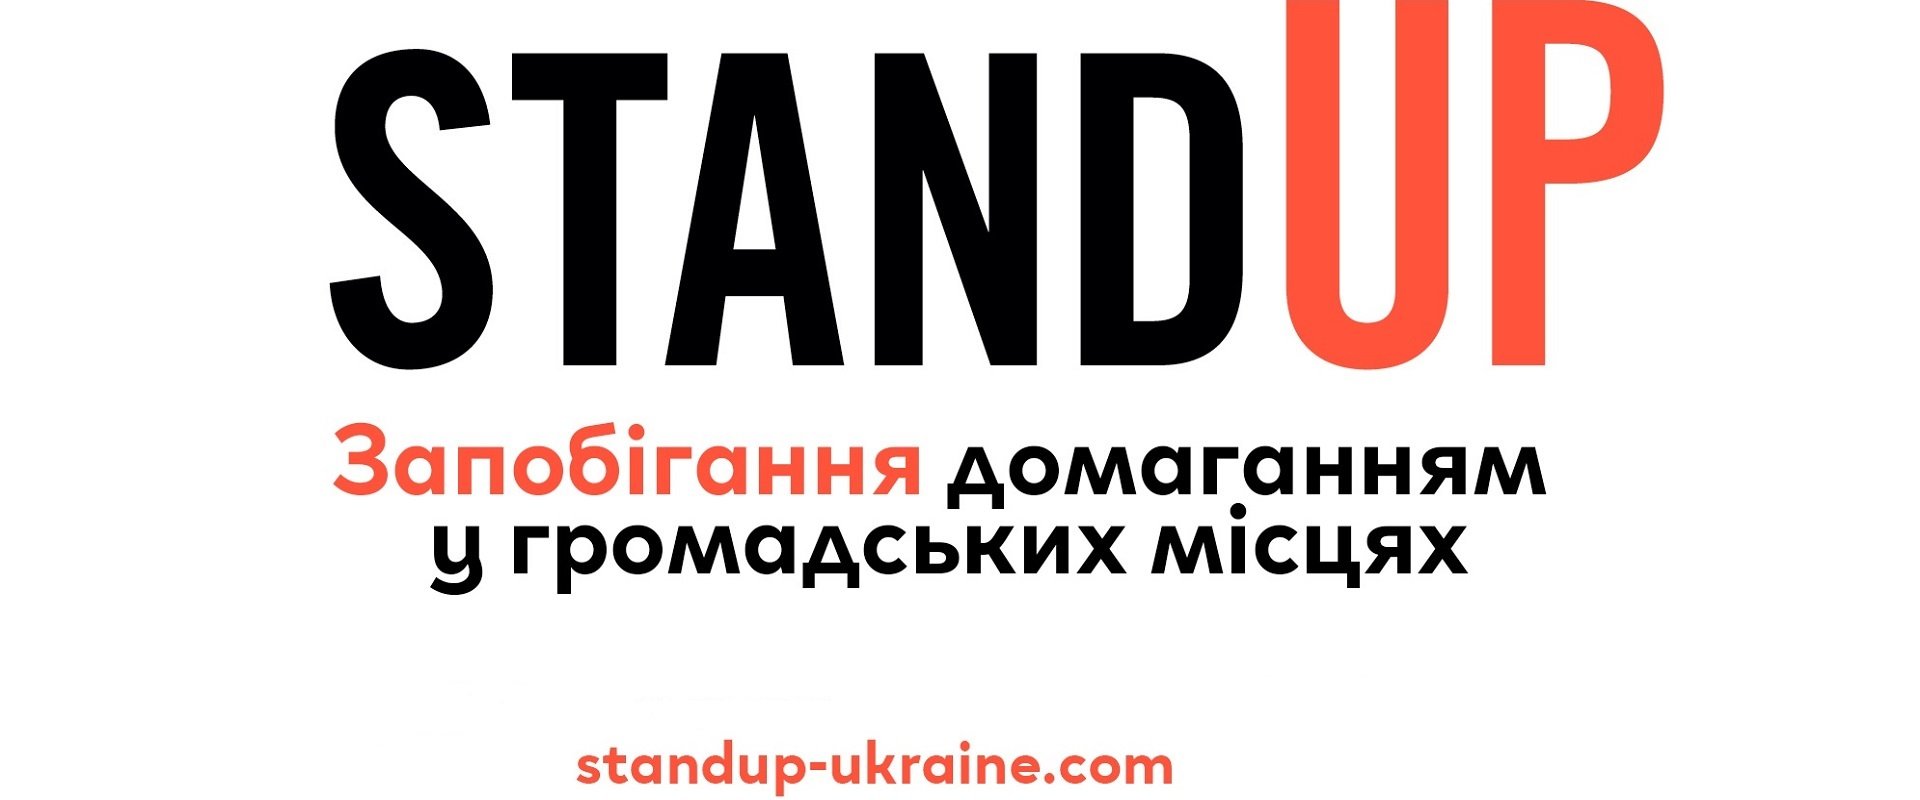 Освітня програма Stand Up в Україні